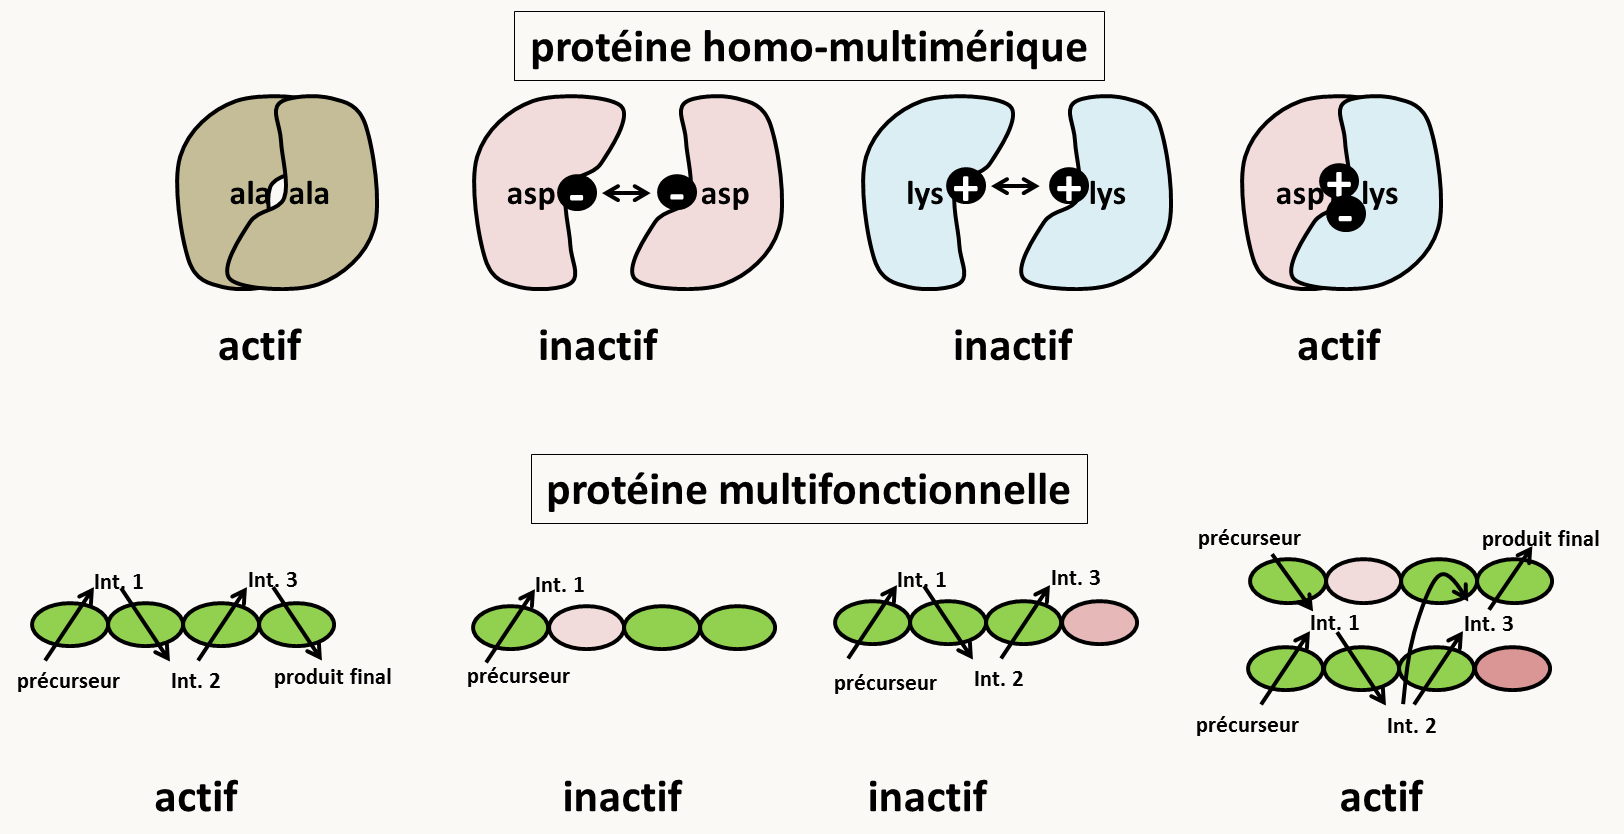 mécanismes de la complémentation inter-allélique. En haut, dans le cas de protéines homo-multimériques, des mutations qui altèrent la fonctionnalité des multimères peuvent se compenser. Des mutations dans des résidus qui sont à la surface des monomères et qui changent la charge peuvent empêcher la formation de multimères et inactiver la protéine. La mise en présence des deux types de monomères permet de reconstituer un complexe actif. En bas, la complémentation est un test qui analyse la fonction. Si un gène produit un polypeptide qui exerce plusieurs fonctions, alors des mutations affectant chacune des fonctions peuvent complémenter.